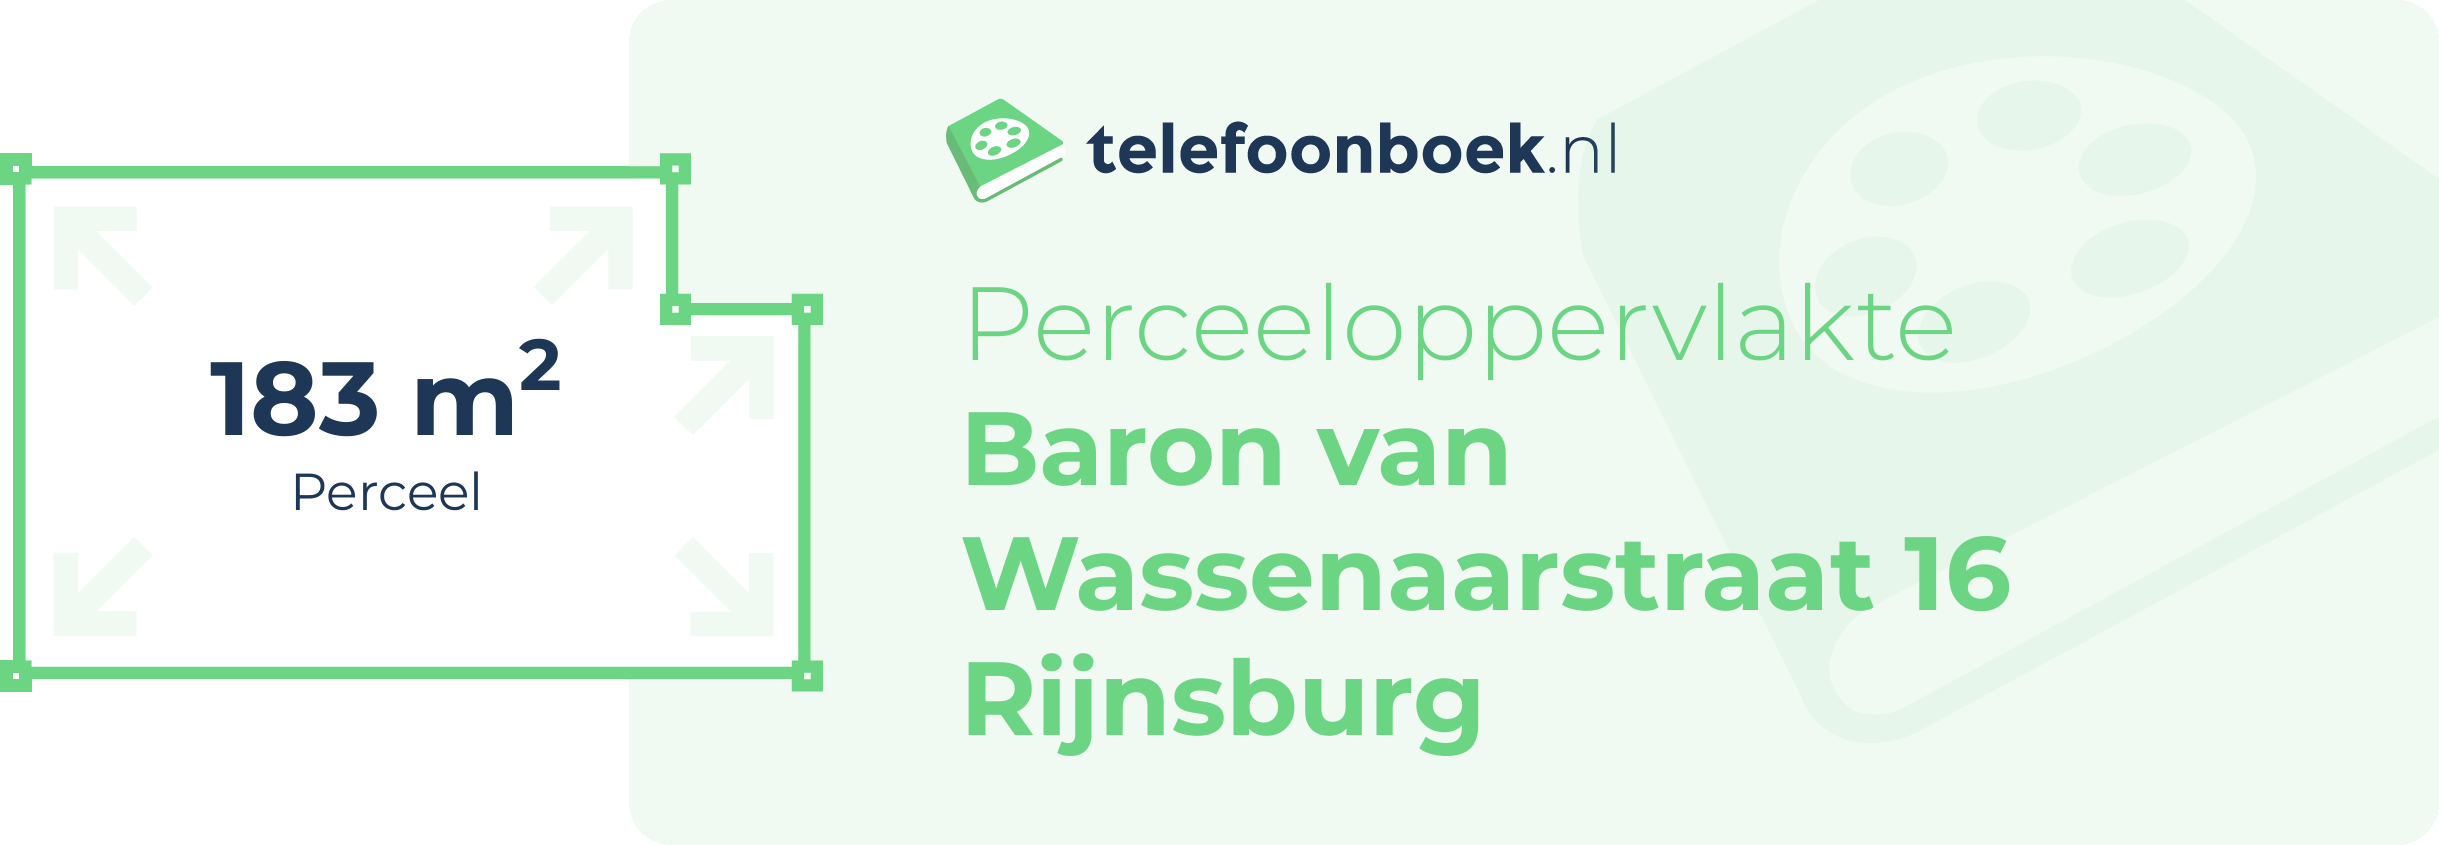 Perceeloppervlakte Baron Van Wassenaarstraat 16 Rijnsburg